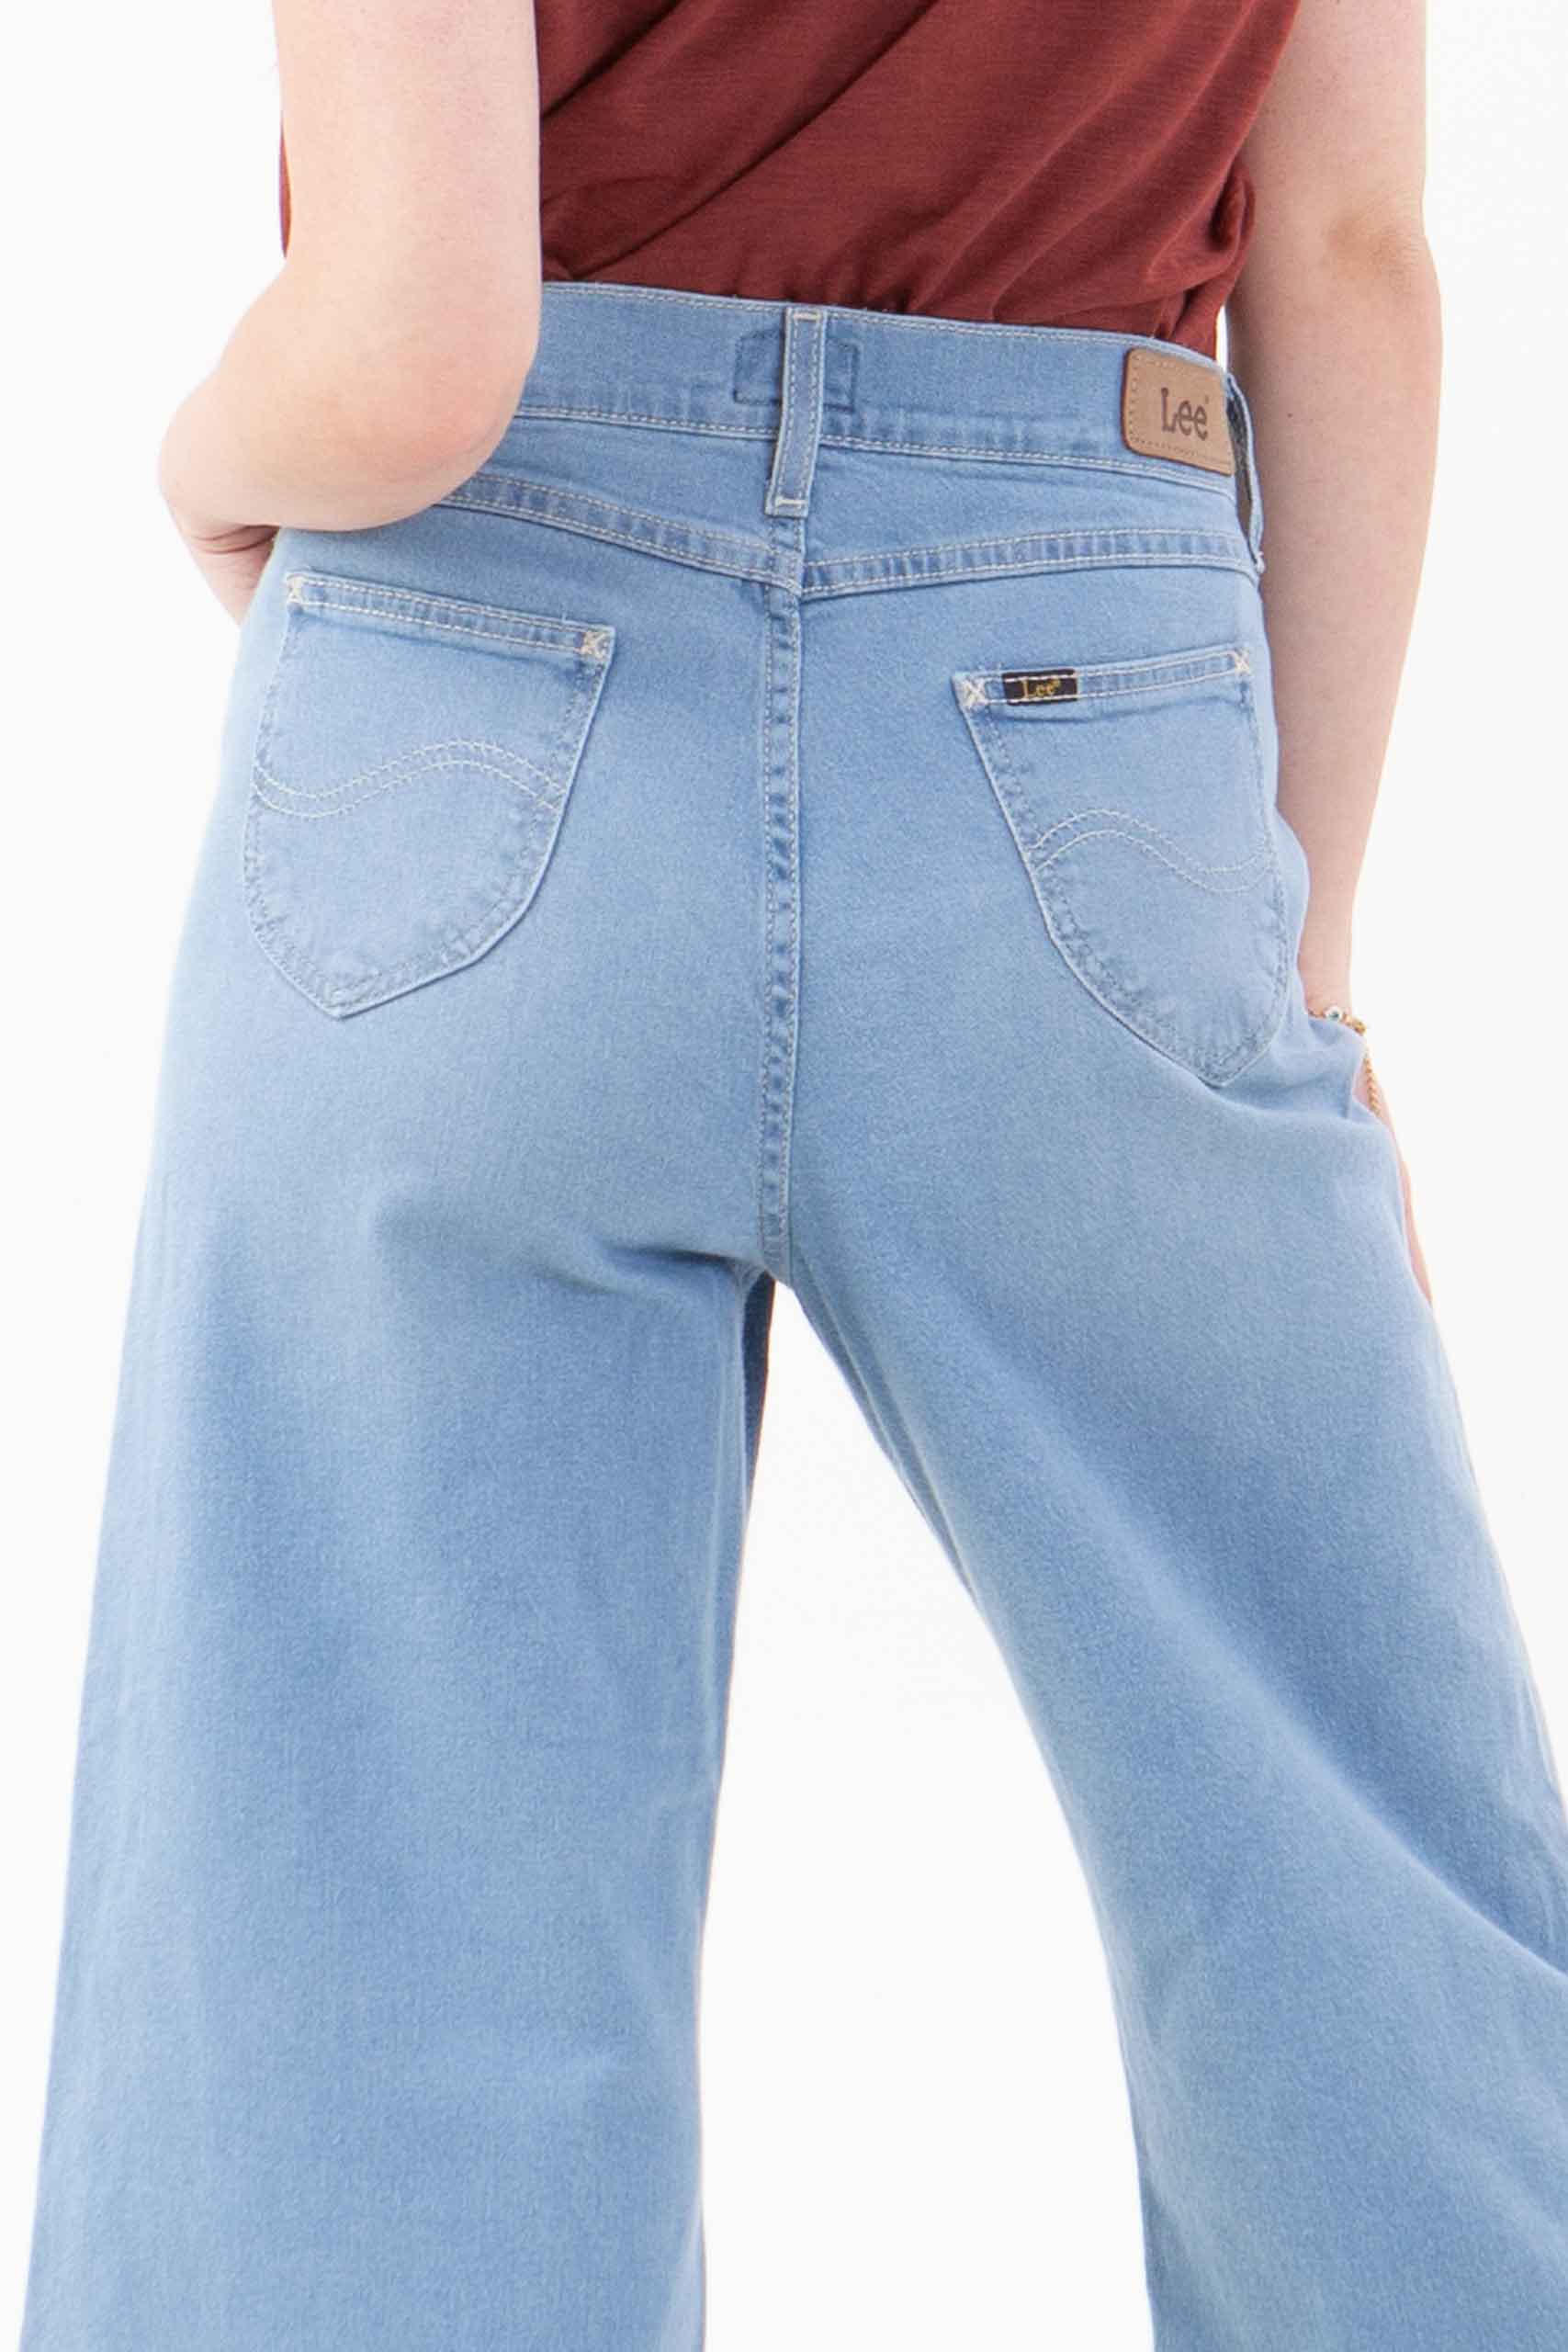 Vista posterior de pantalón de color celeste con dos bolsillos de marca lee